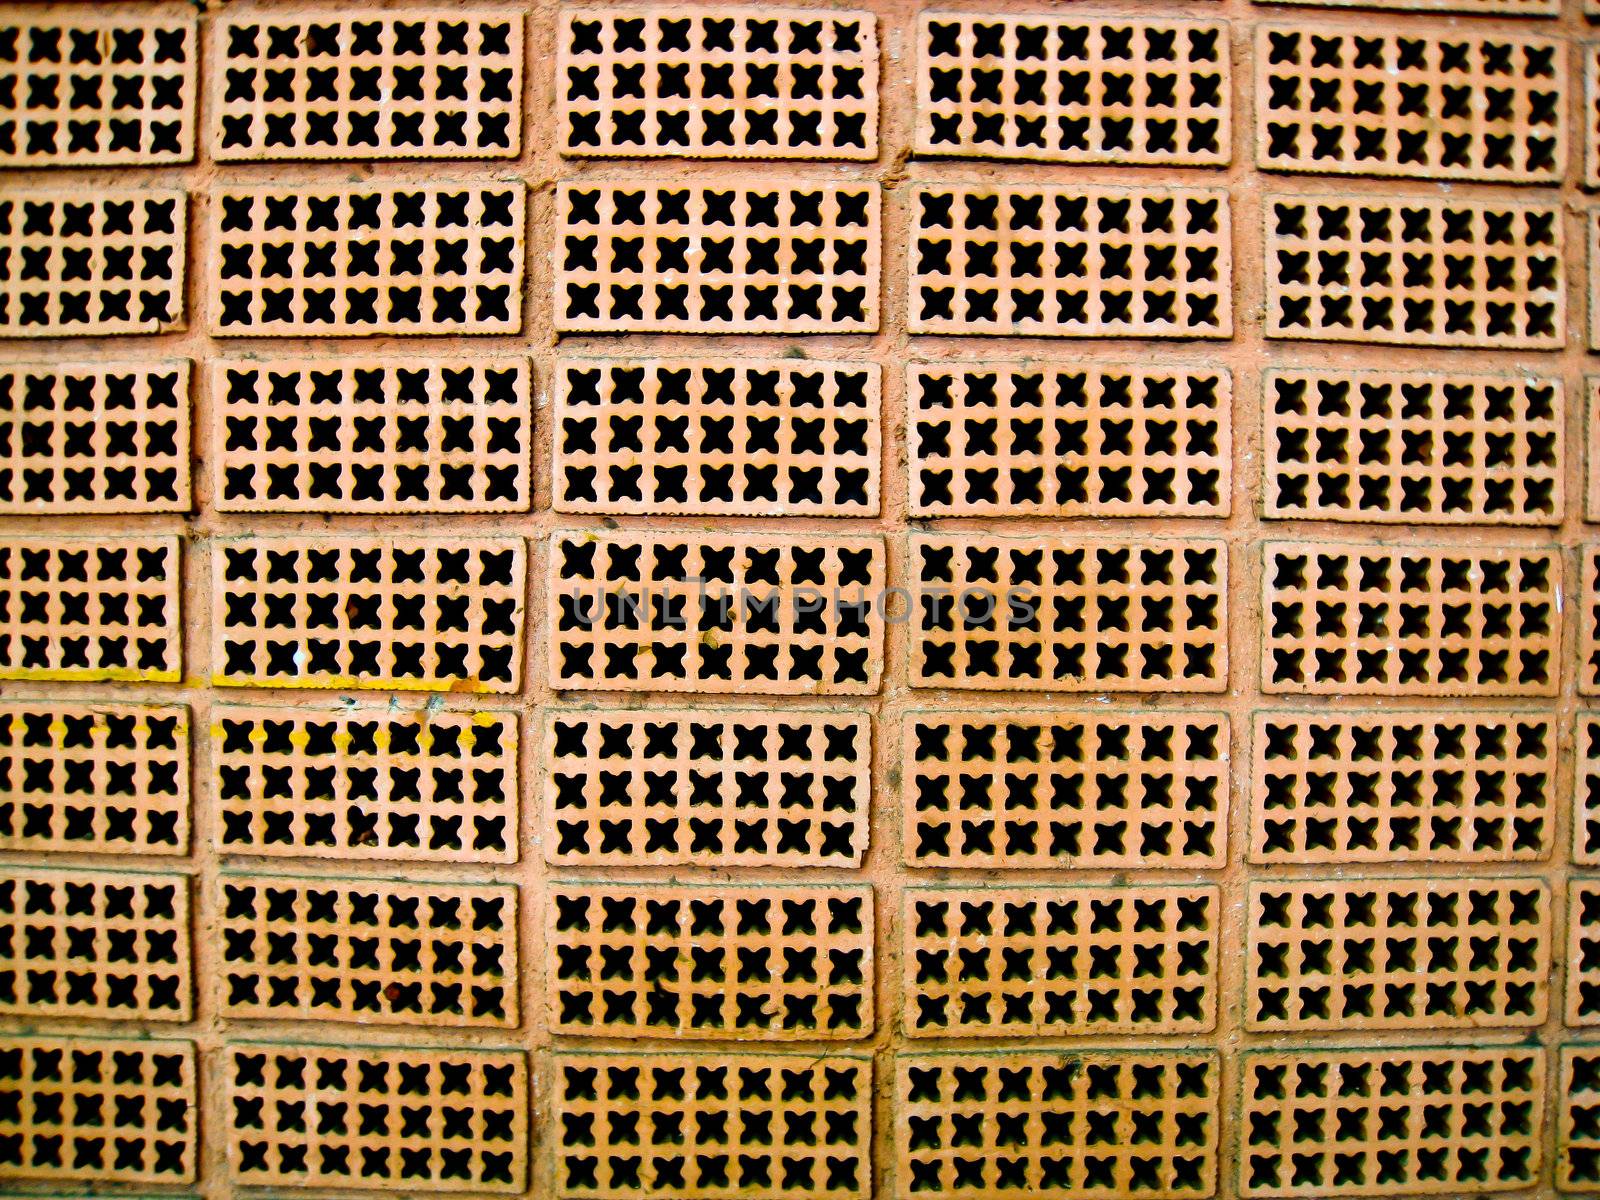 Brown brick wall pattern by gjeerawut